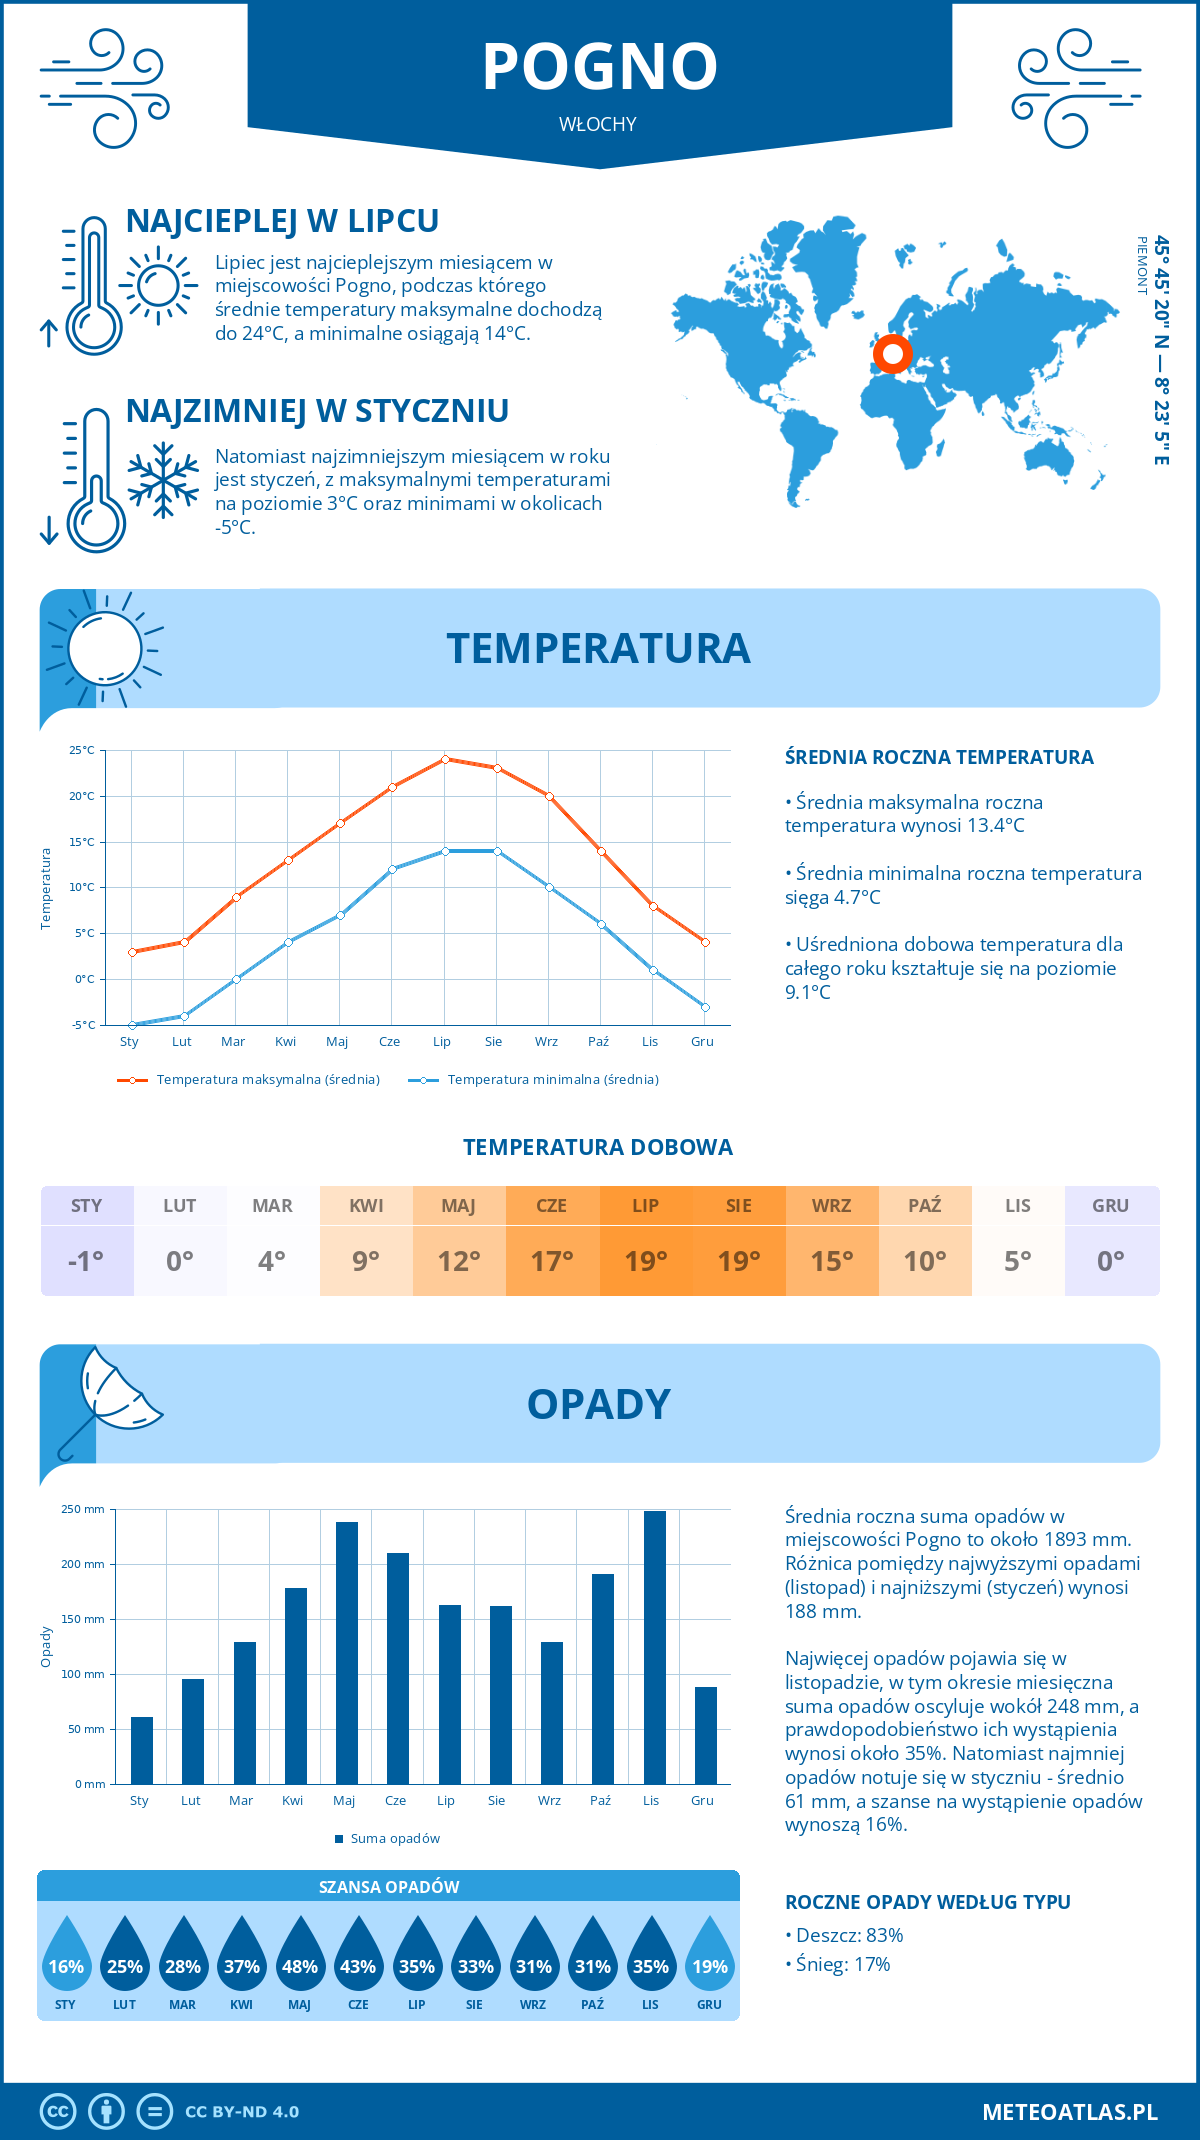 Pogoda Pogno (Włochy). Temperatura oraz opady.